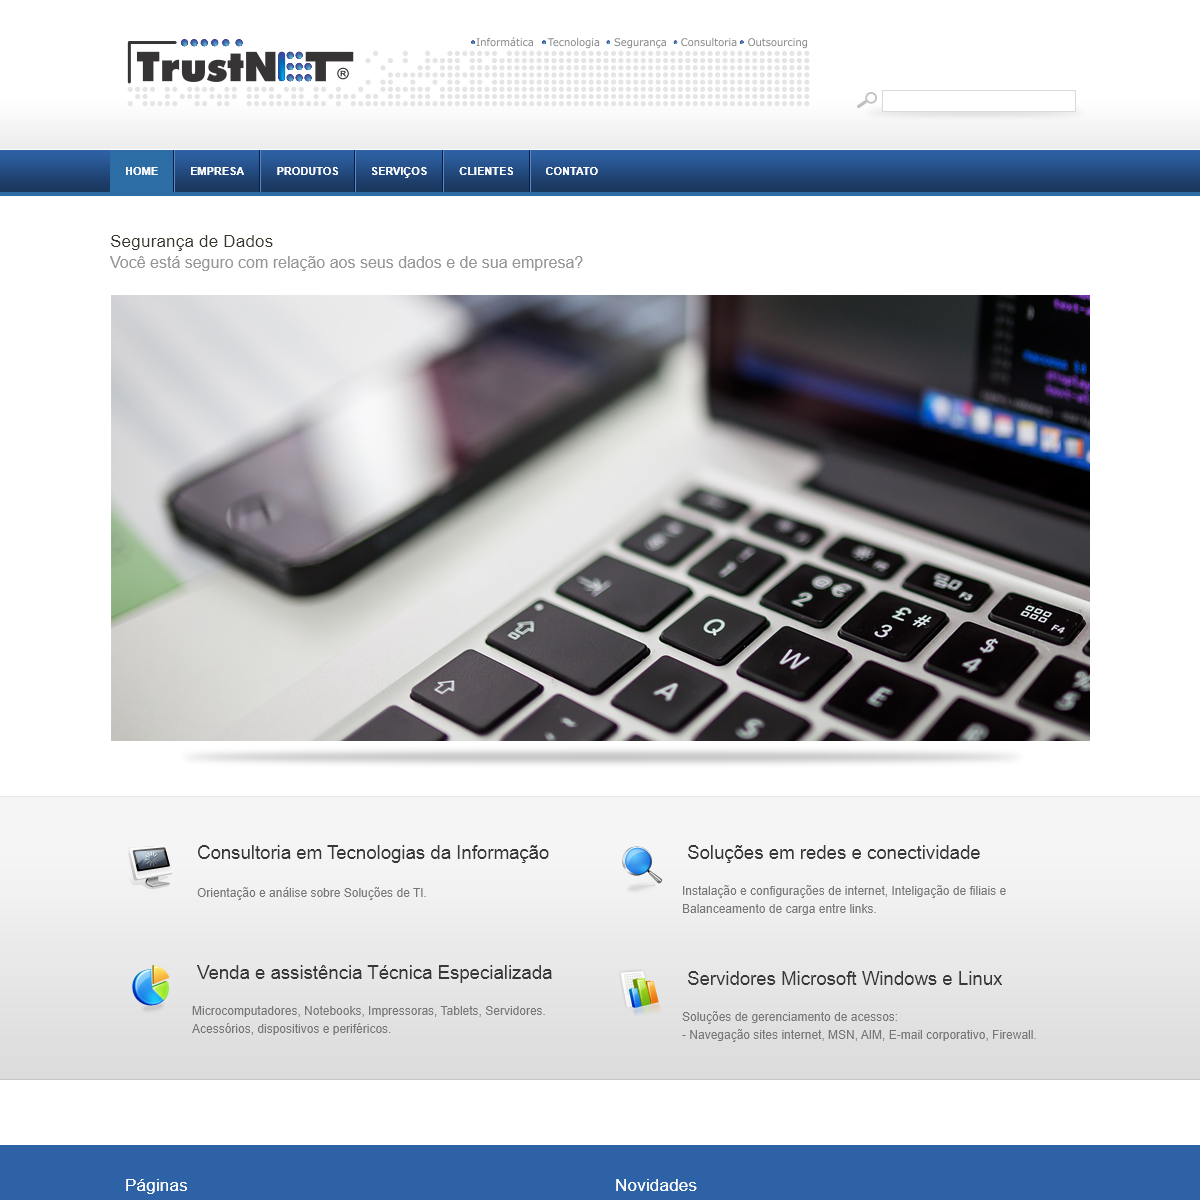 A complete backup of trustnet.com.br